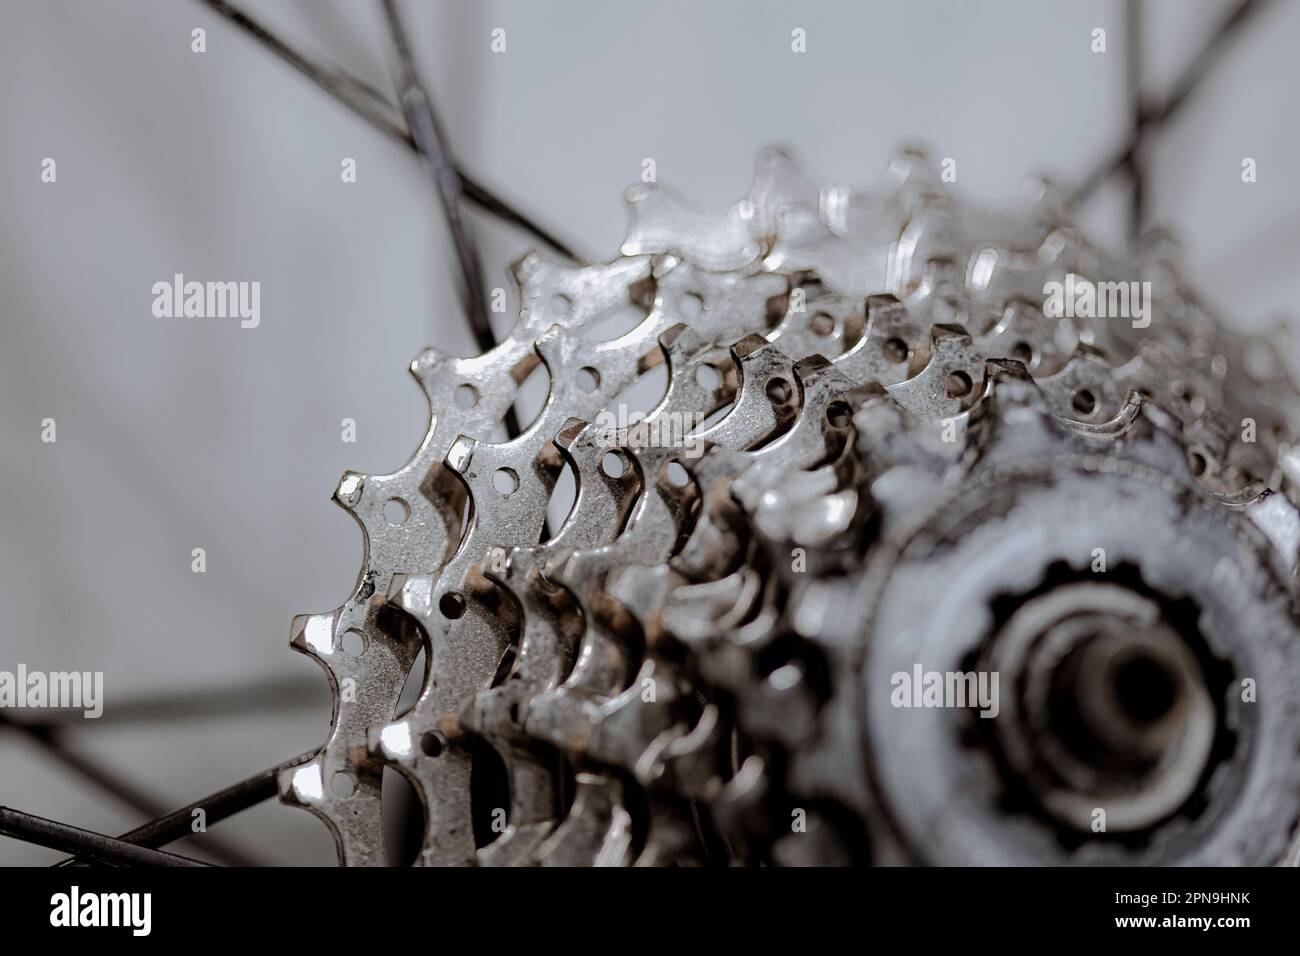 Trasmissione della corona dentata a denti su una ruota di bicicletta vera e propria Foto Stock